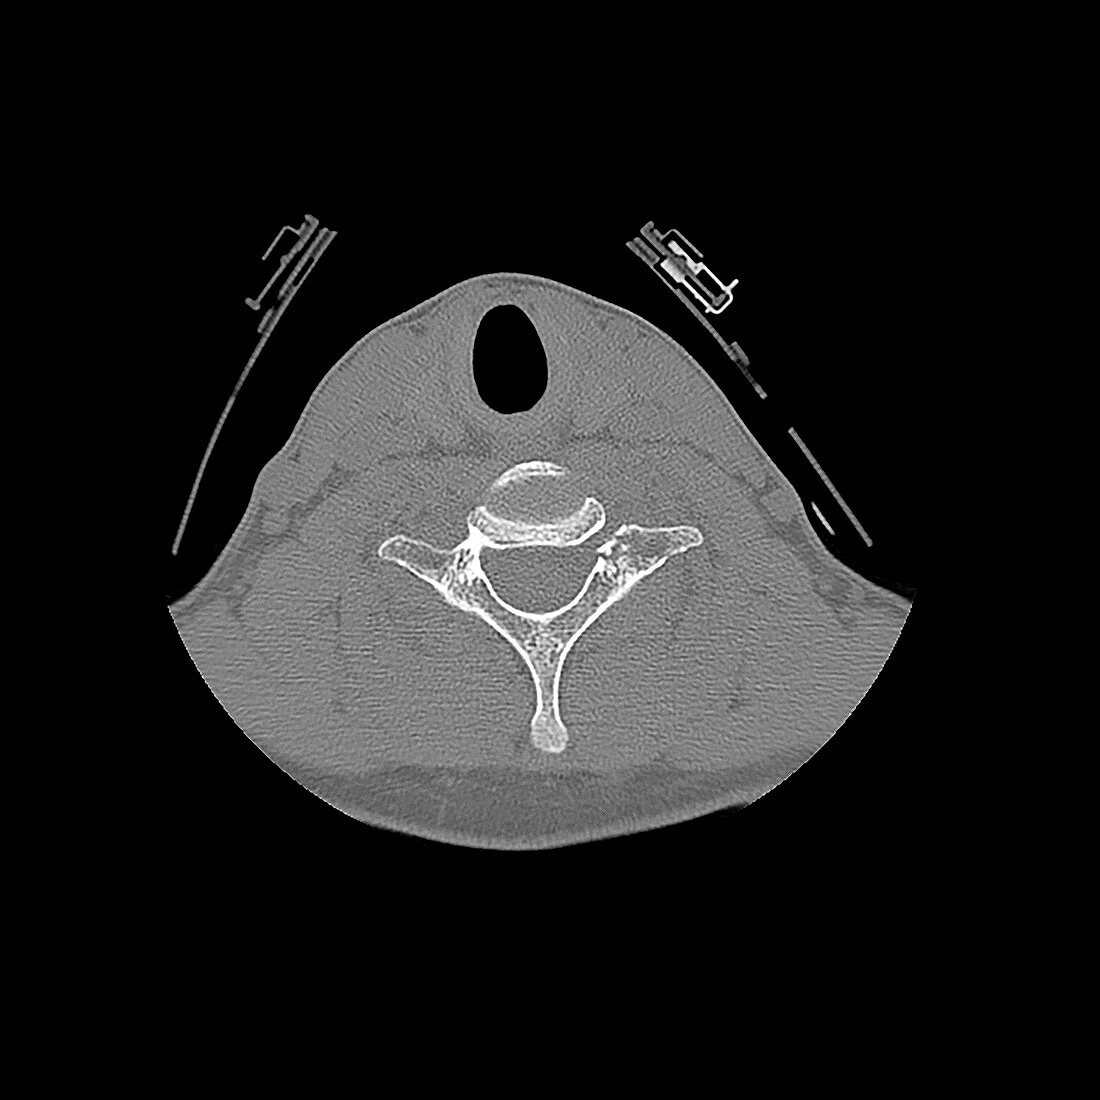 Fractured neck vertebra,CT scan